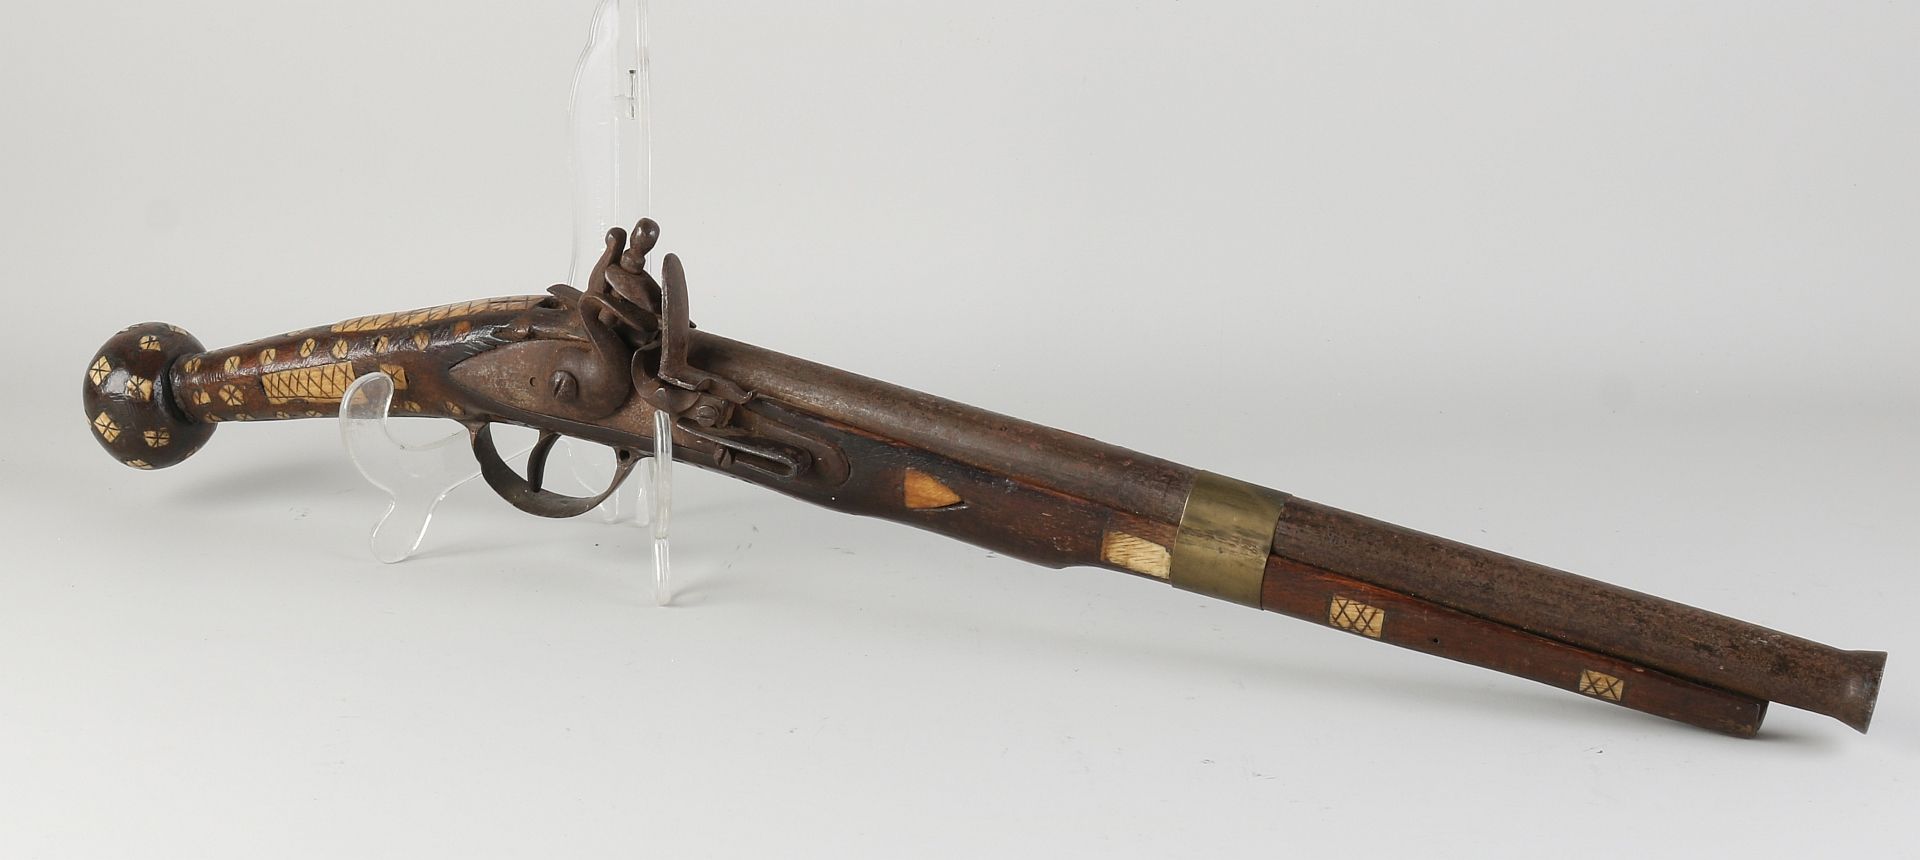 Antique flint gun